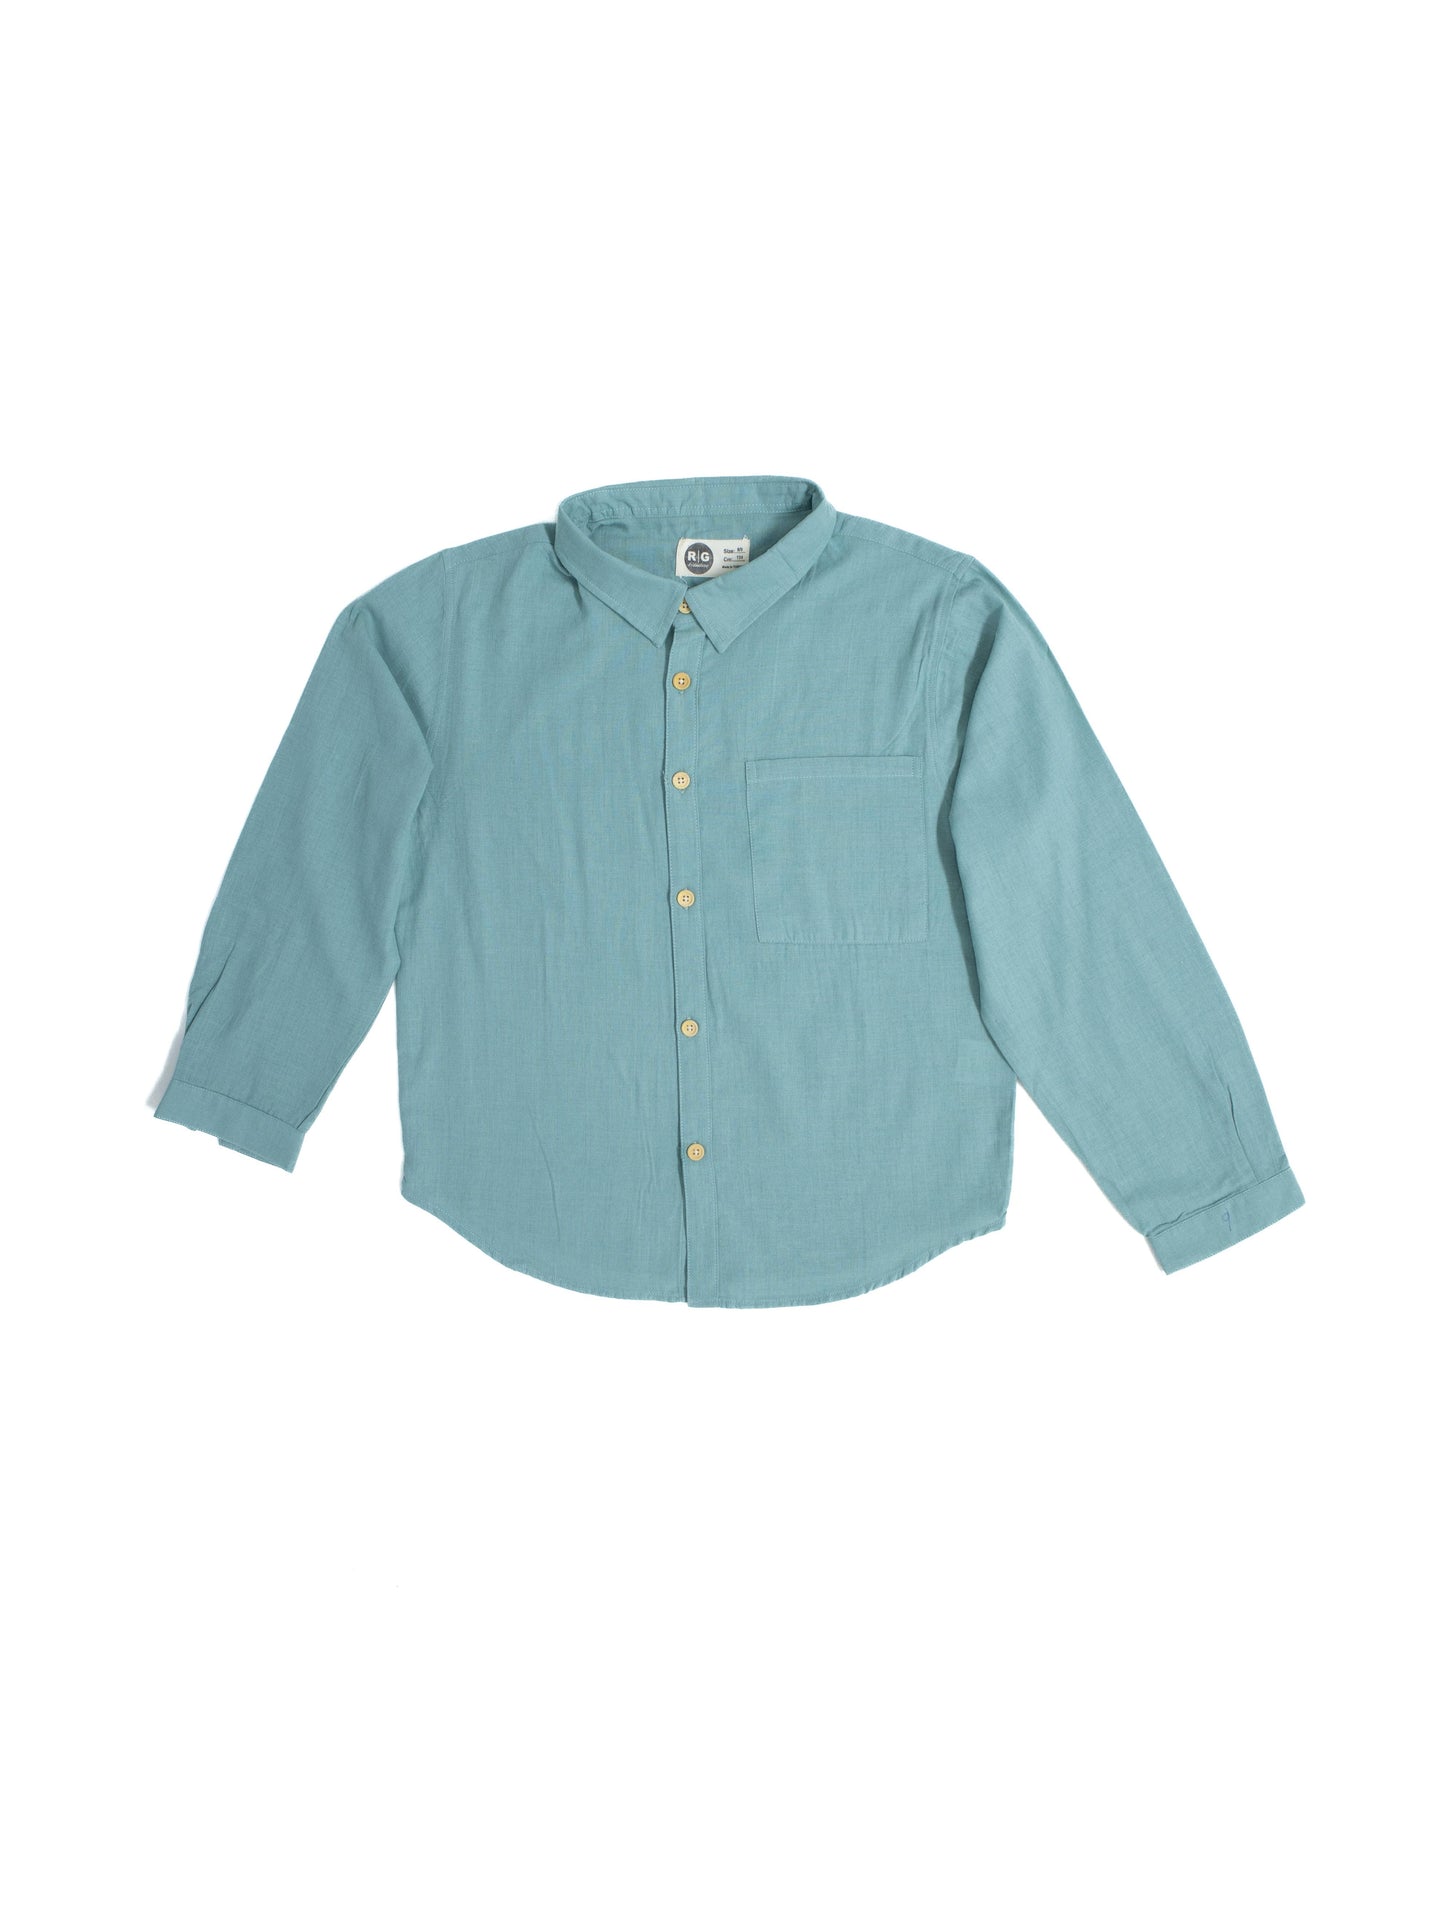 Children's 100% Linen Anti-Sweat Long Sleeve Shirt